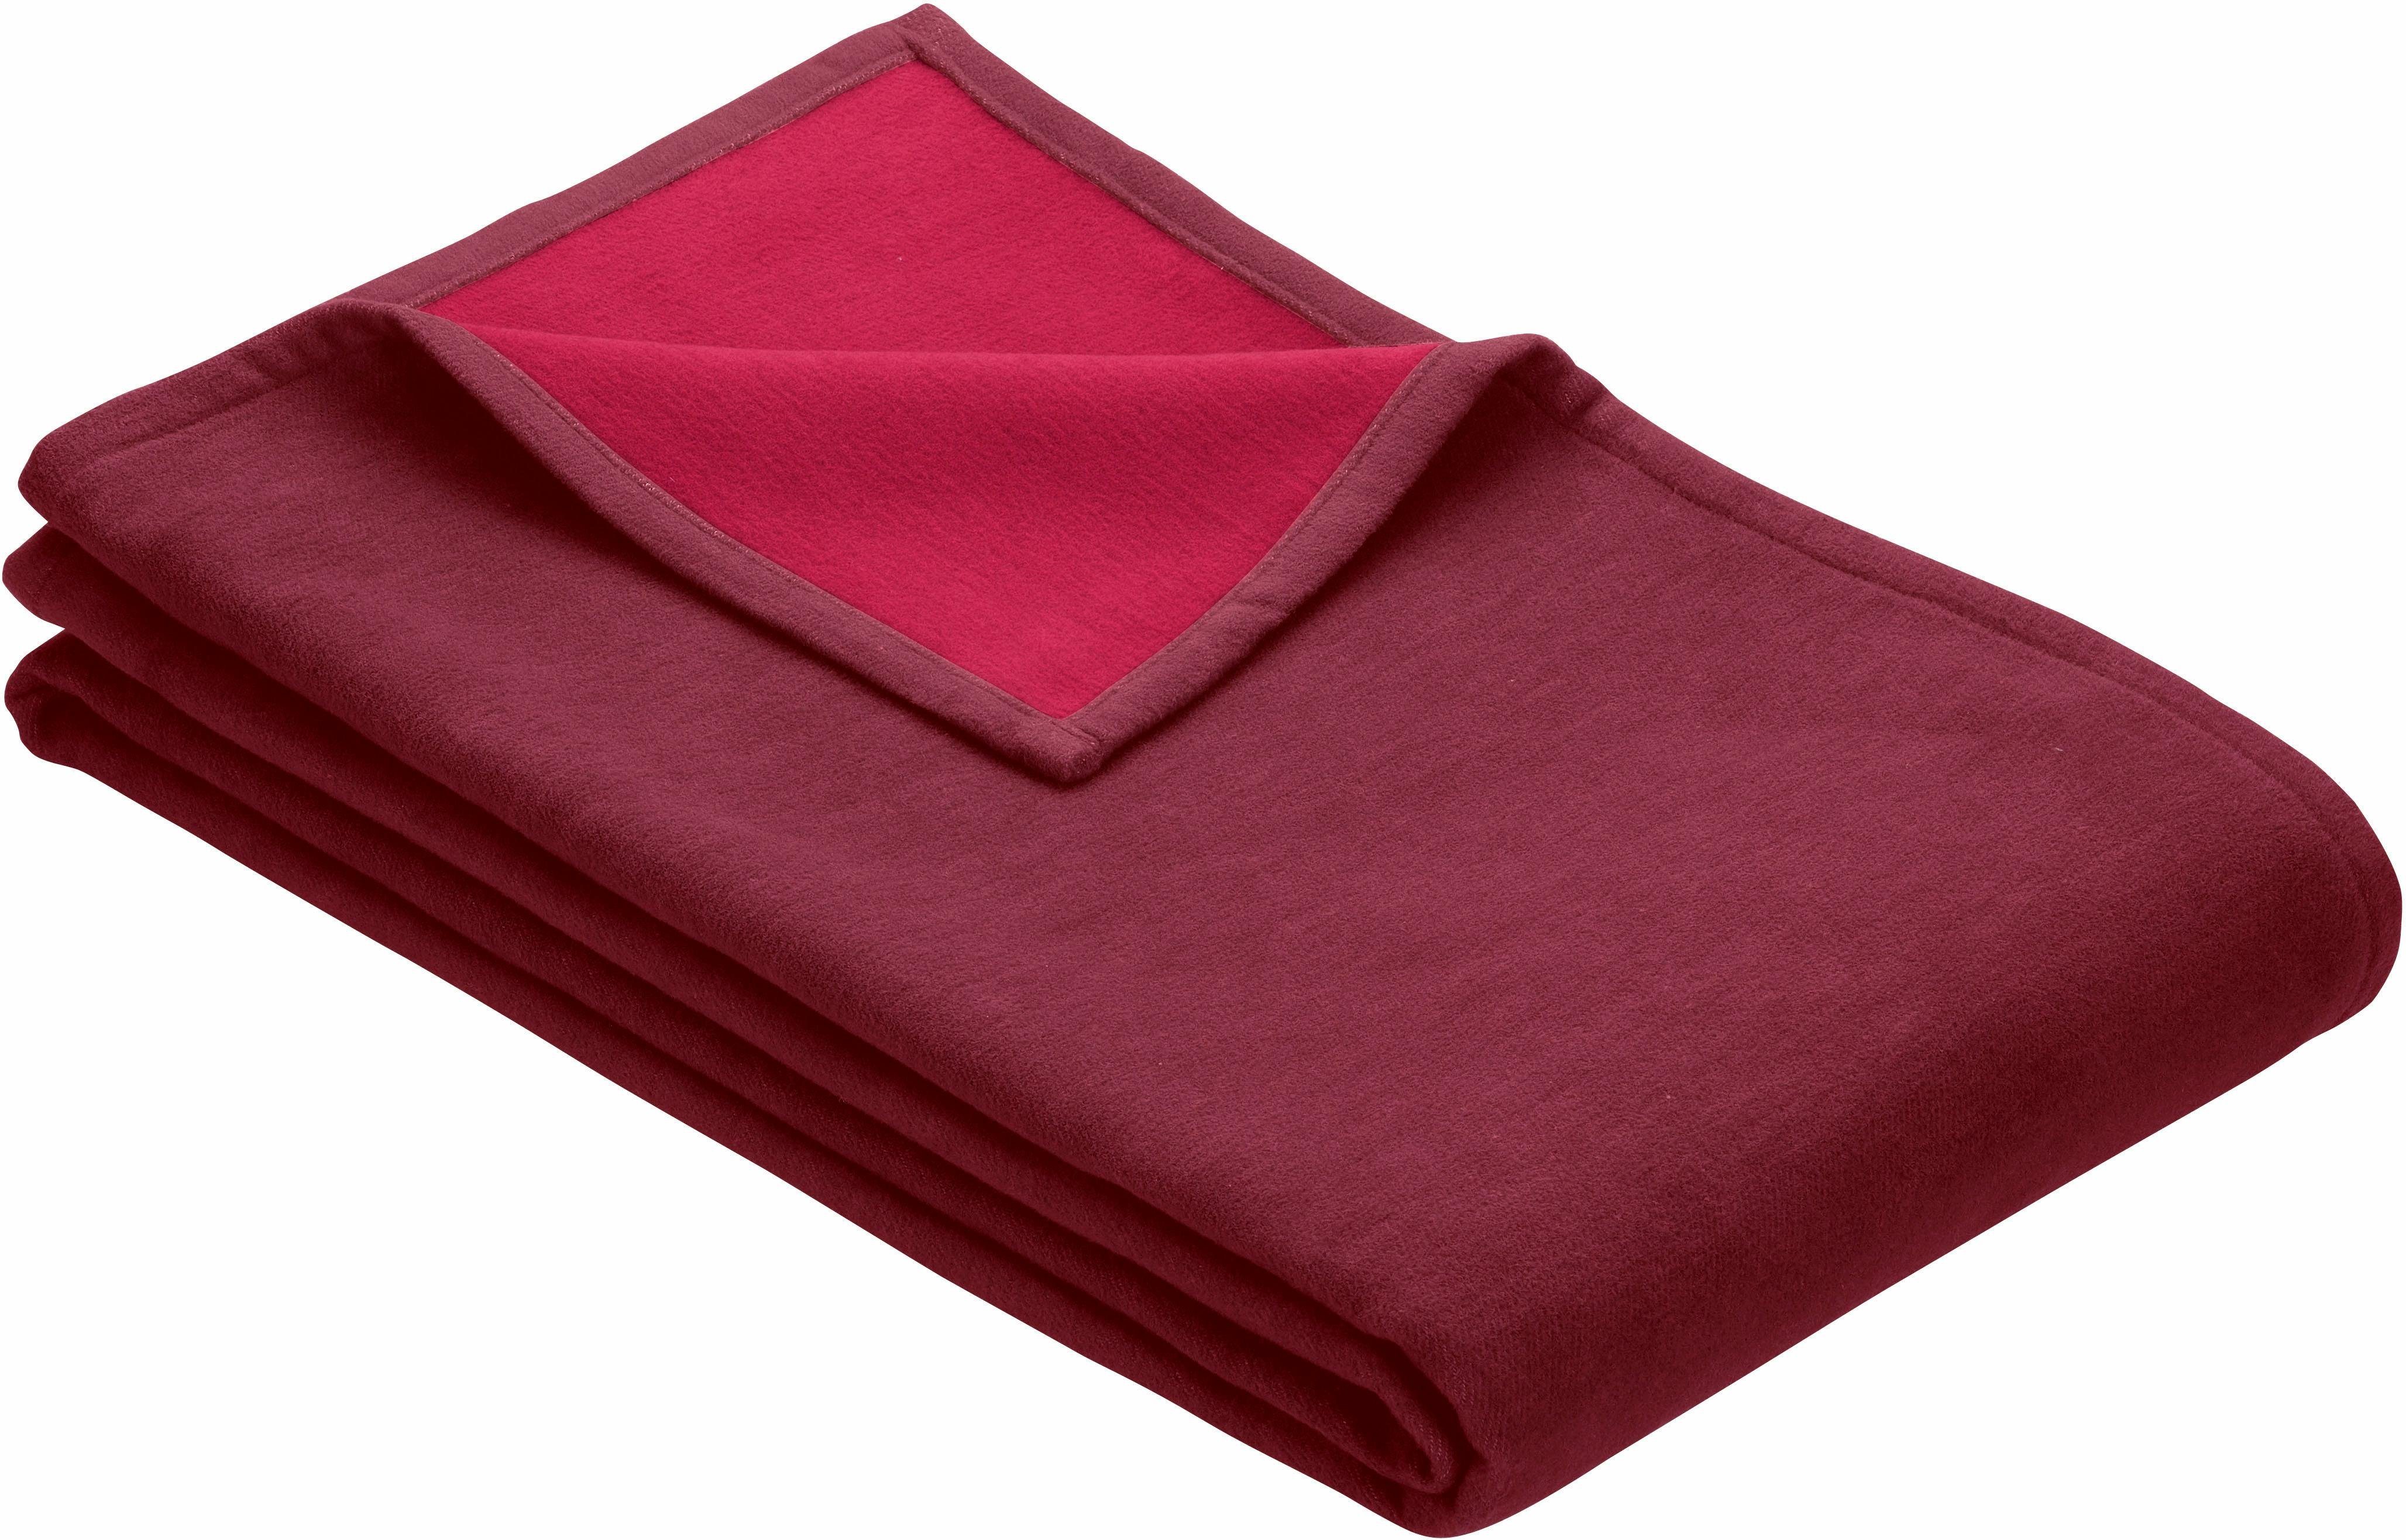 Wohndecke Cotton Pur, IBENA, in trendigen Farben dunkelrot/rot